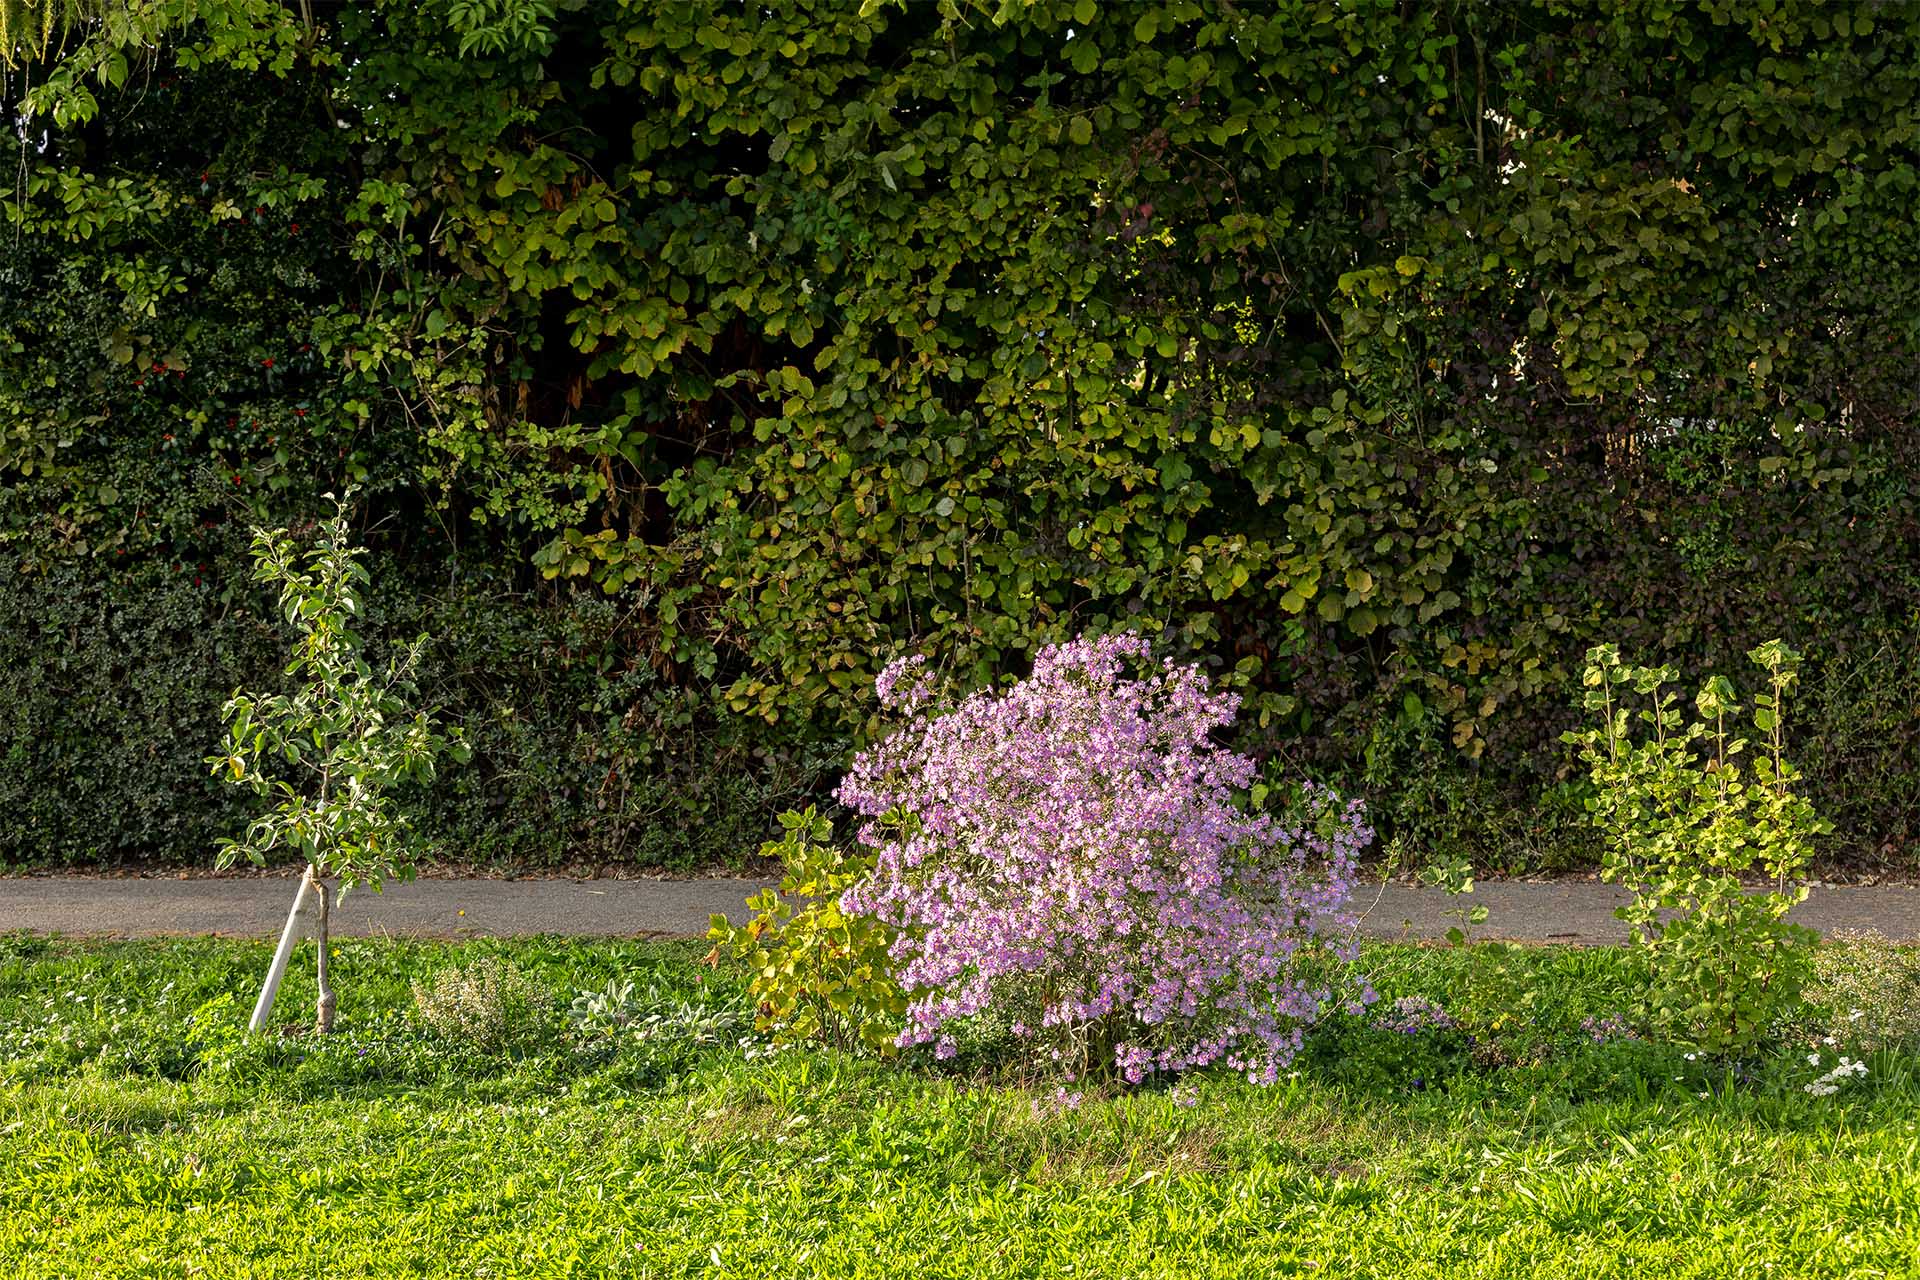 Essbarer Naschgarten Sonnenberg beim Areal Ifang des Verein für Familiengärten Dübendorf: Im Oktober 2023 strahlt die blühende Aster in der Abendsonne. Die essbare Hecke ist nicht nur für Menschen: Die Aster lockt zahlreiche Insekten, Bienen und Schmetterlinge, an und versorgt diese mit Nektar. Links steht ein Apfelbaum, in der Bildmitte die violett blühende Aster und rechts sieht man eine Johannisbeere. Im Hintergrund sieht man den Weg "Im Branzenäsch" vor einer Hecke.